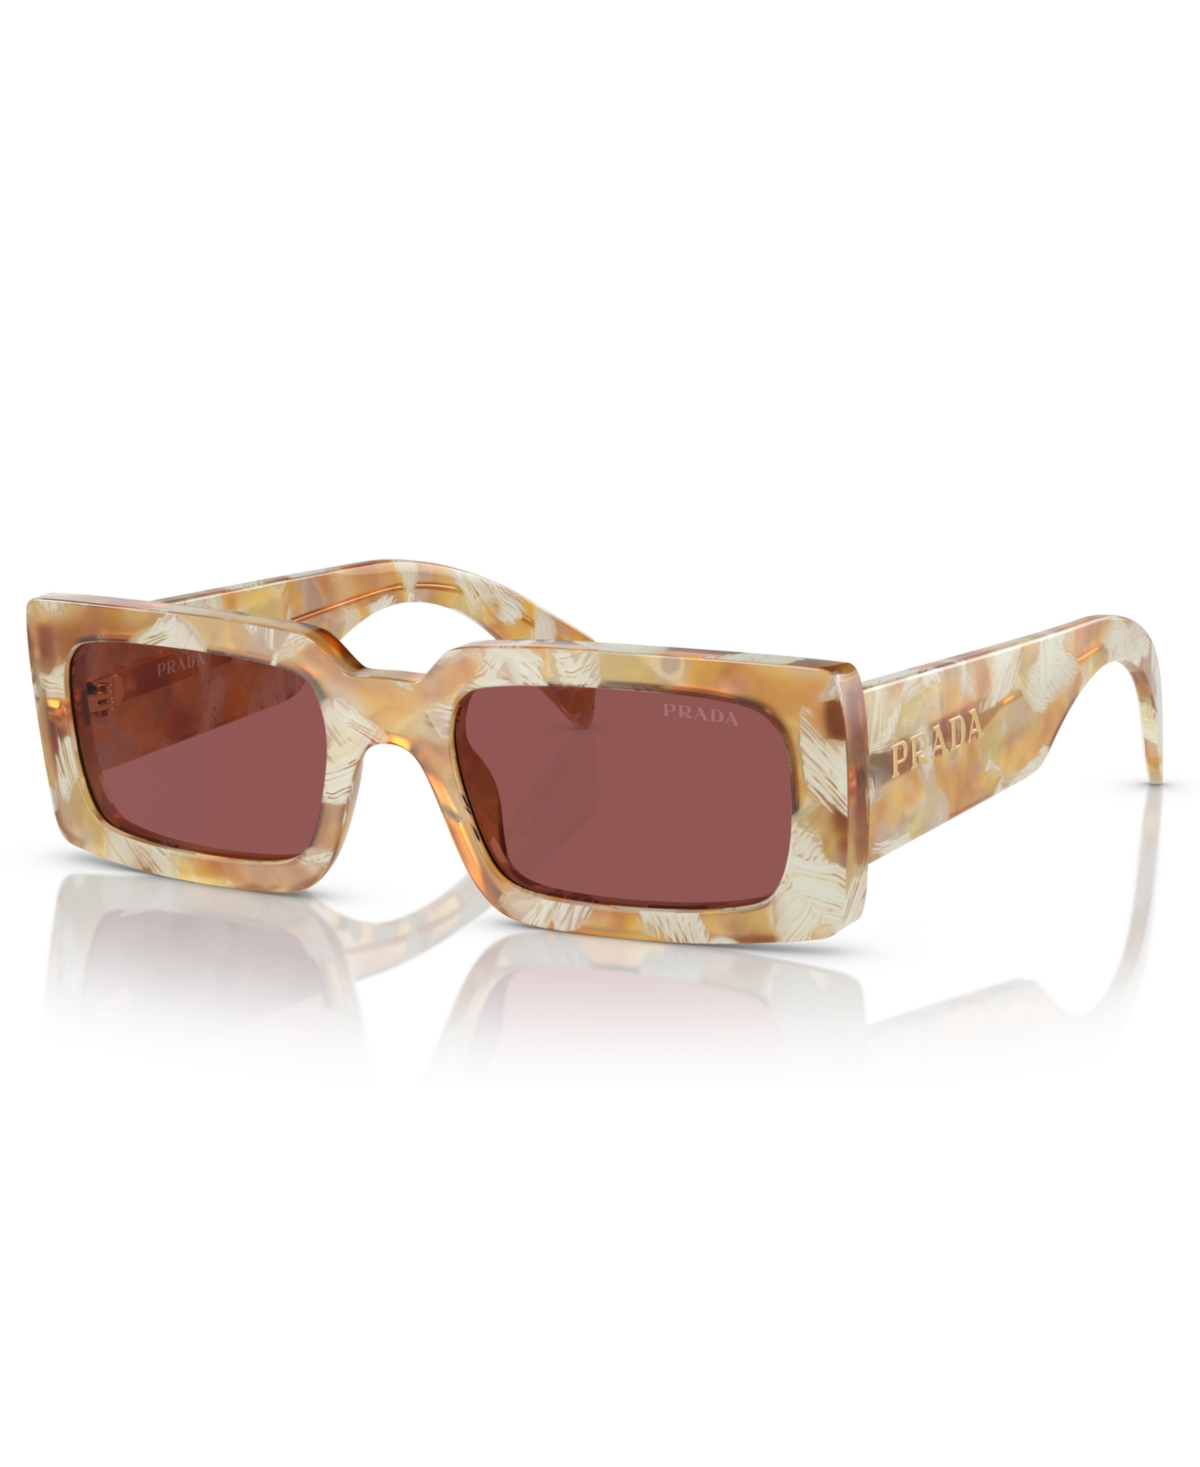 Prada Women's Sunglasses Pr A07s In Desert Tortoise